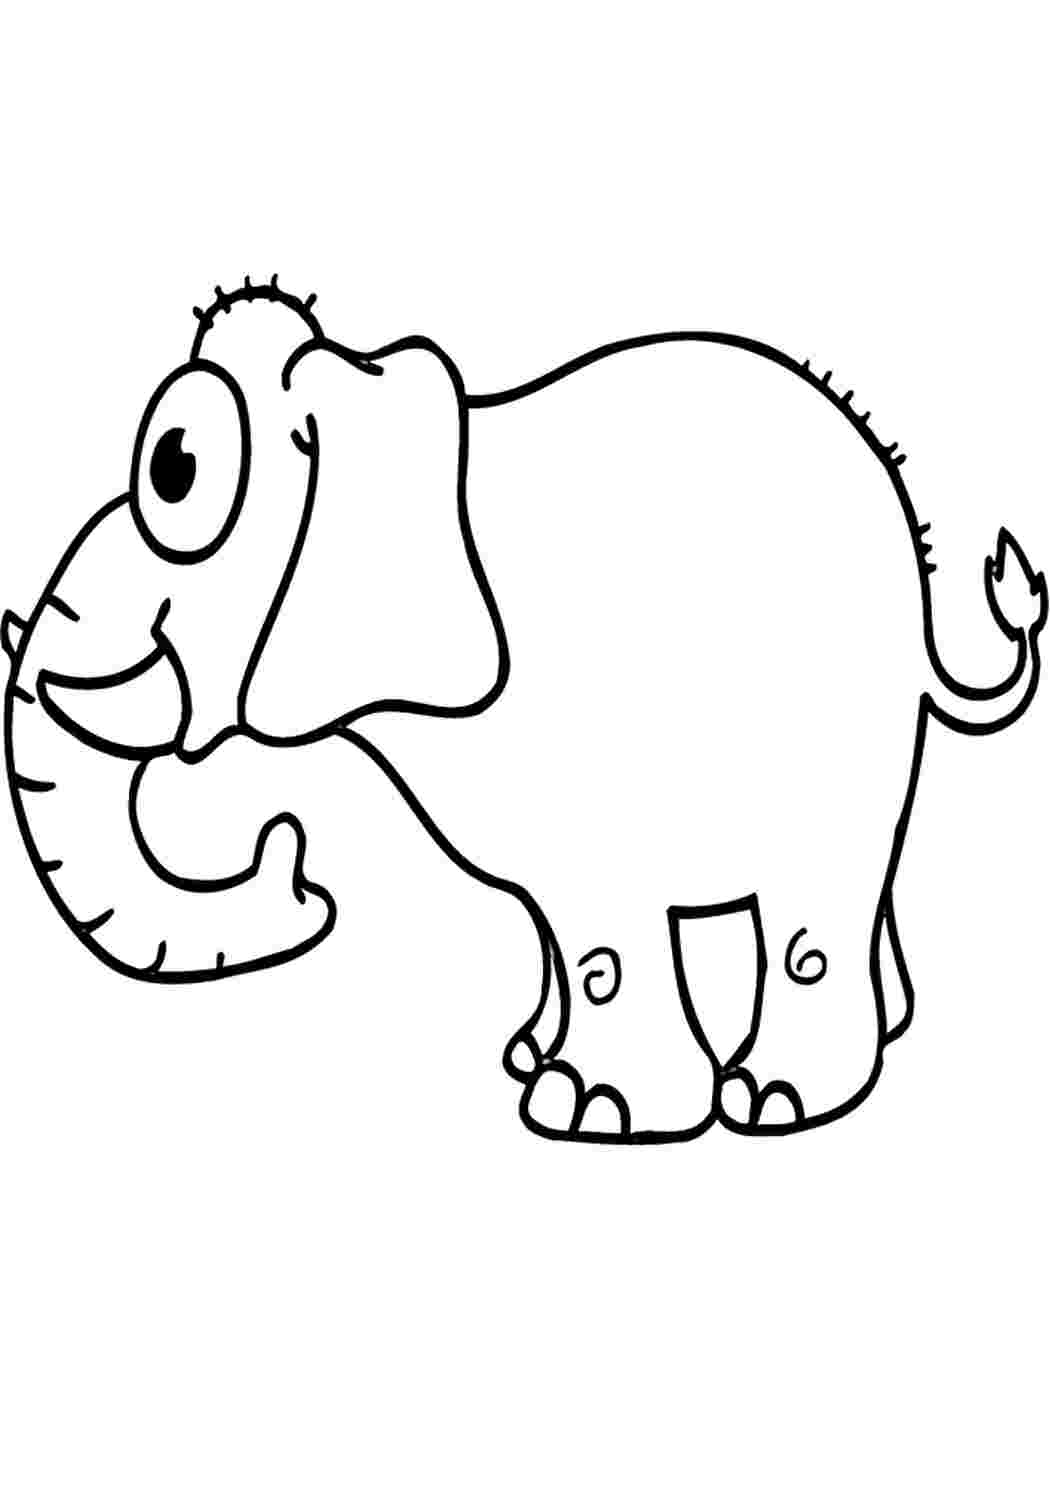 Раскраска антистресс голова слона распечатать